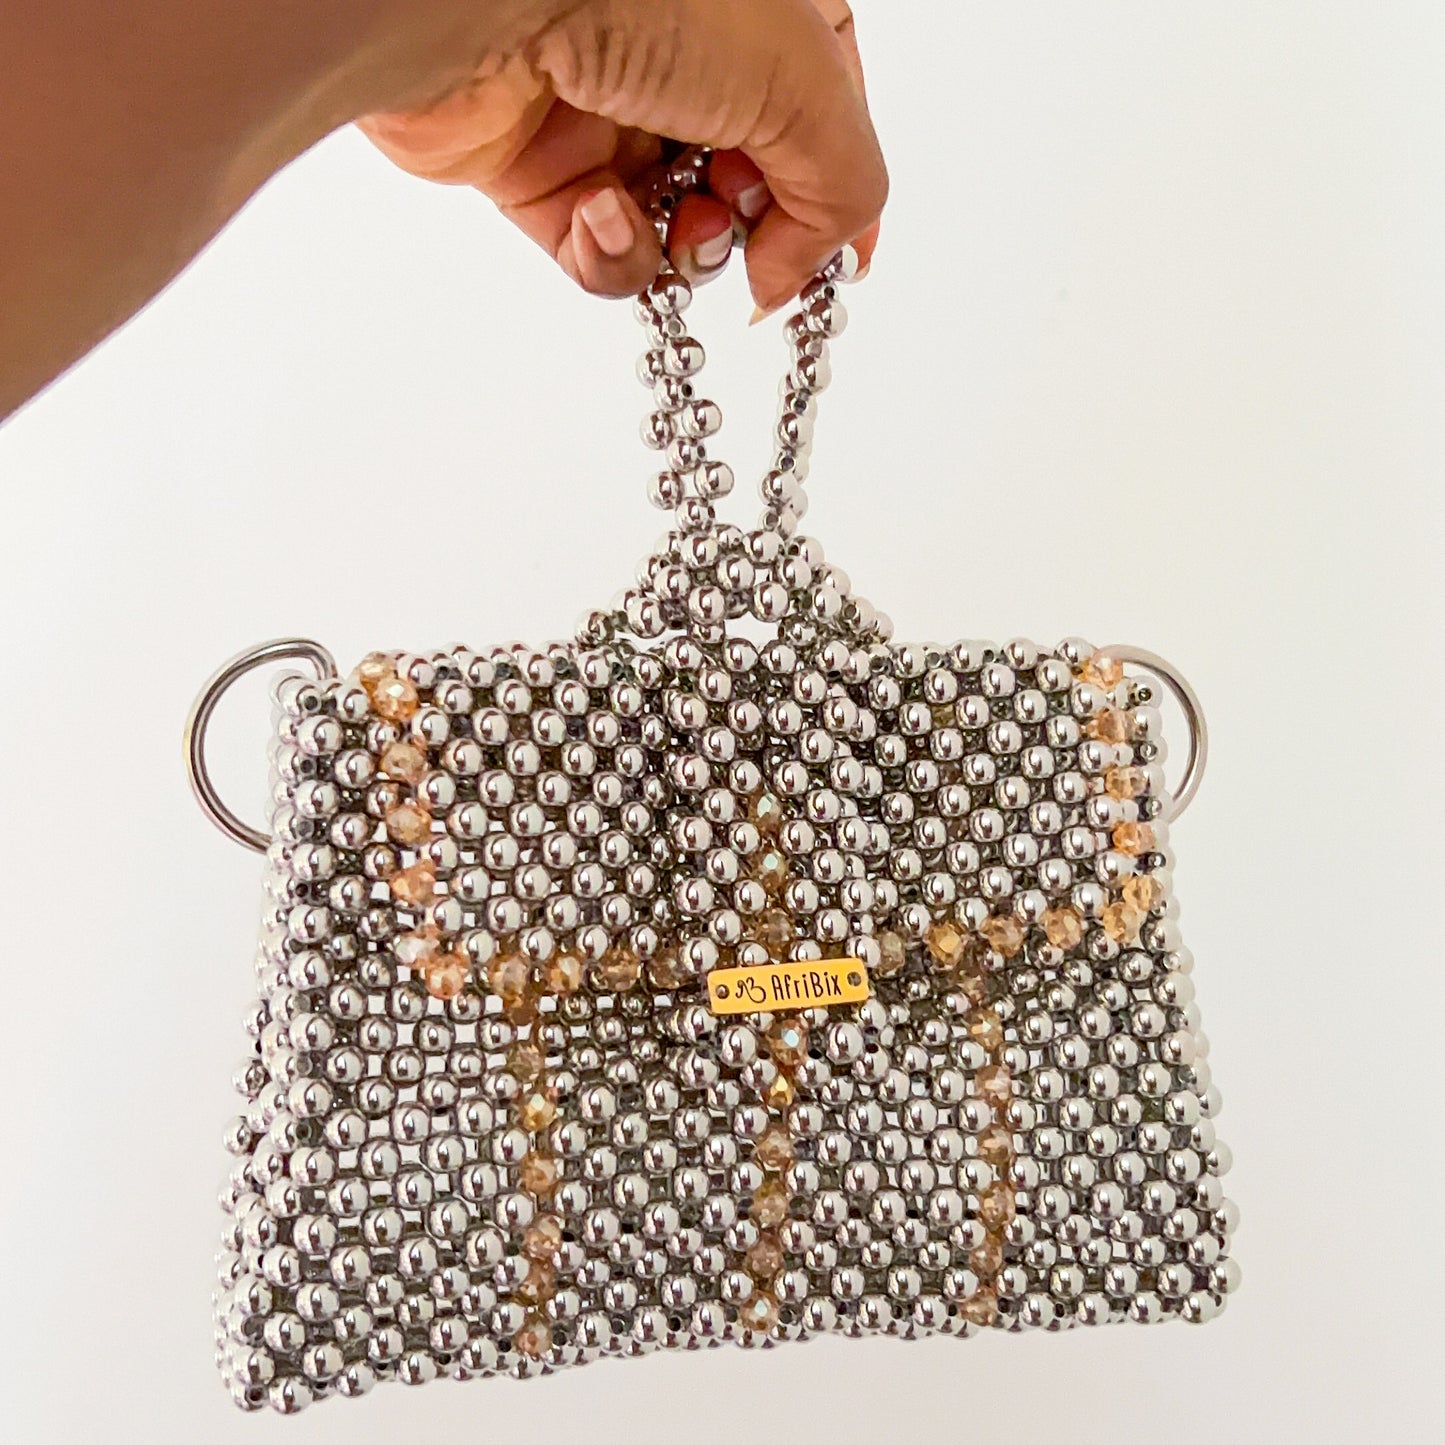 Silver Crystal Clutch Handbag - Isioma